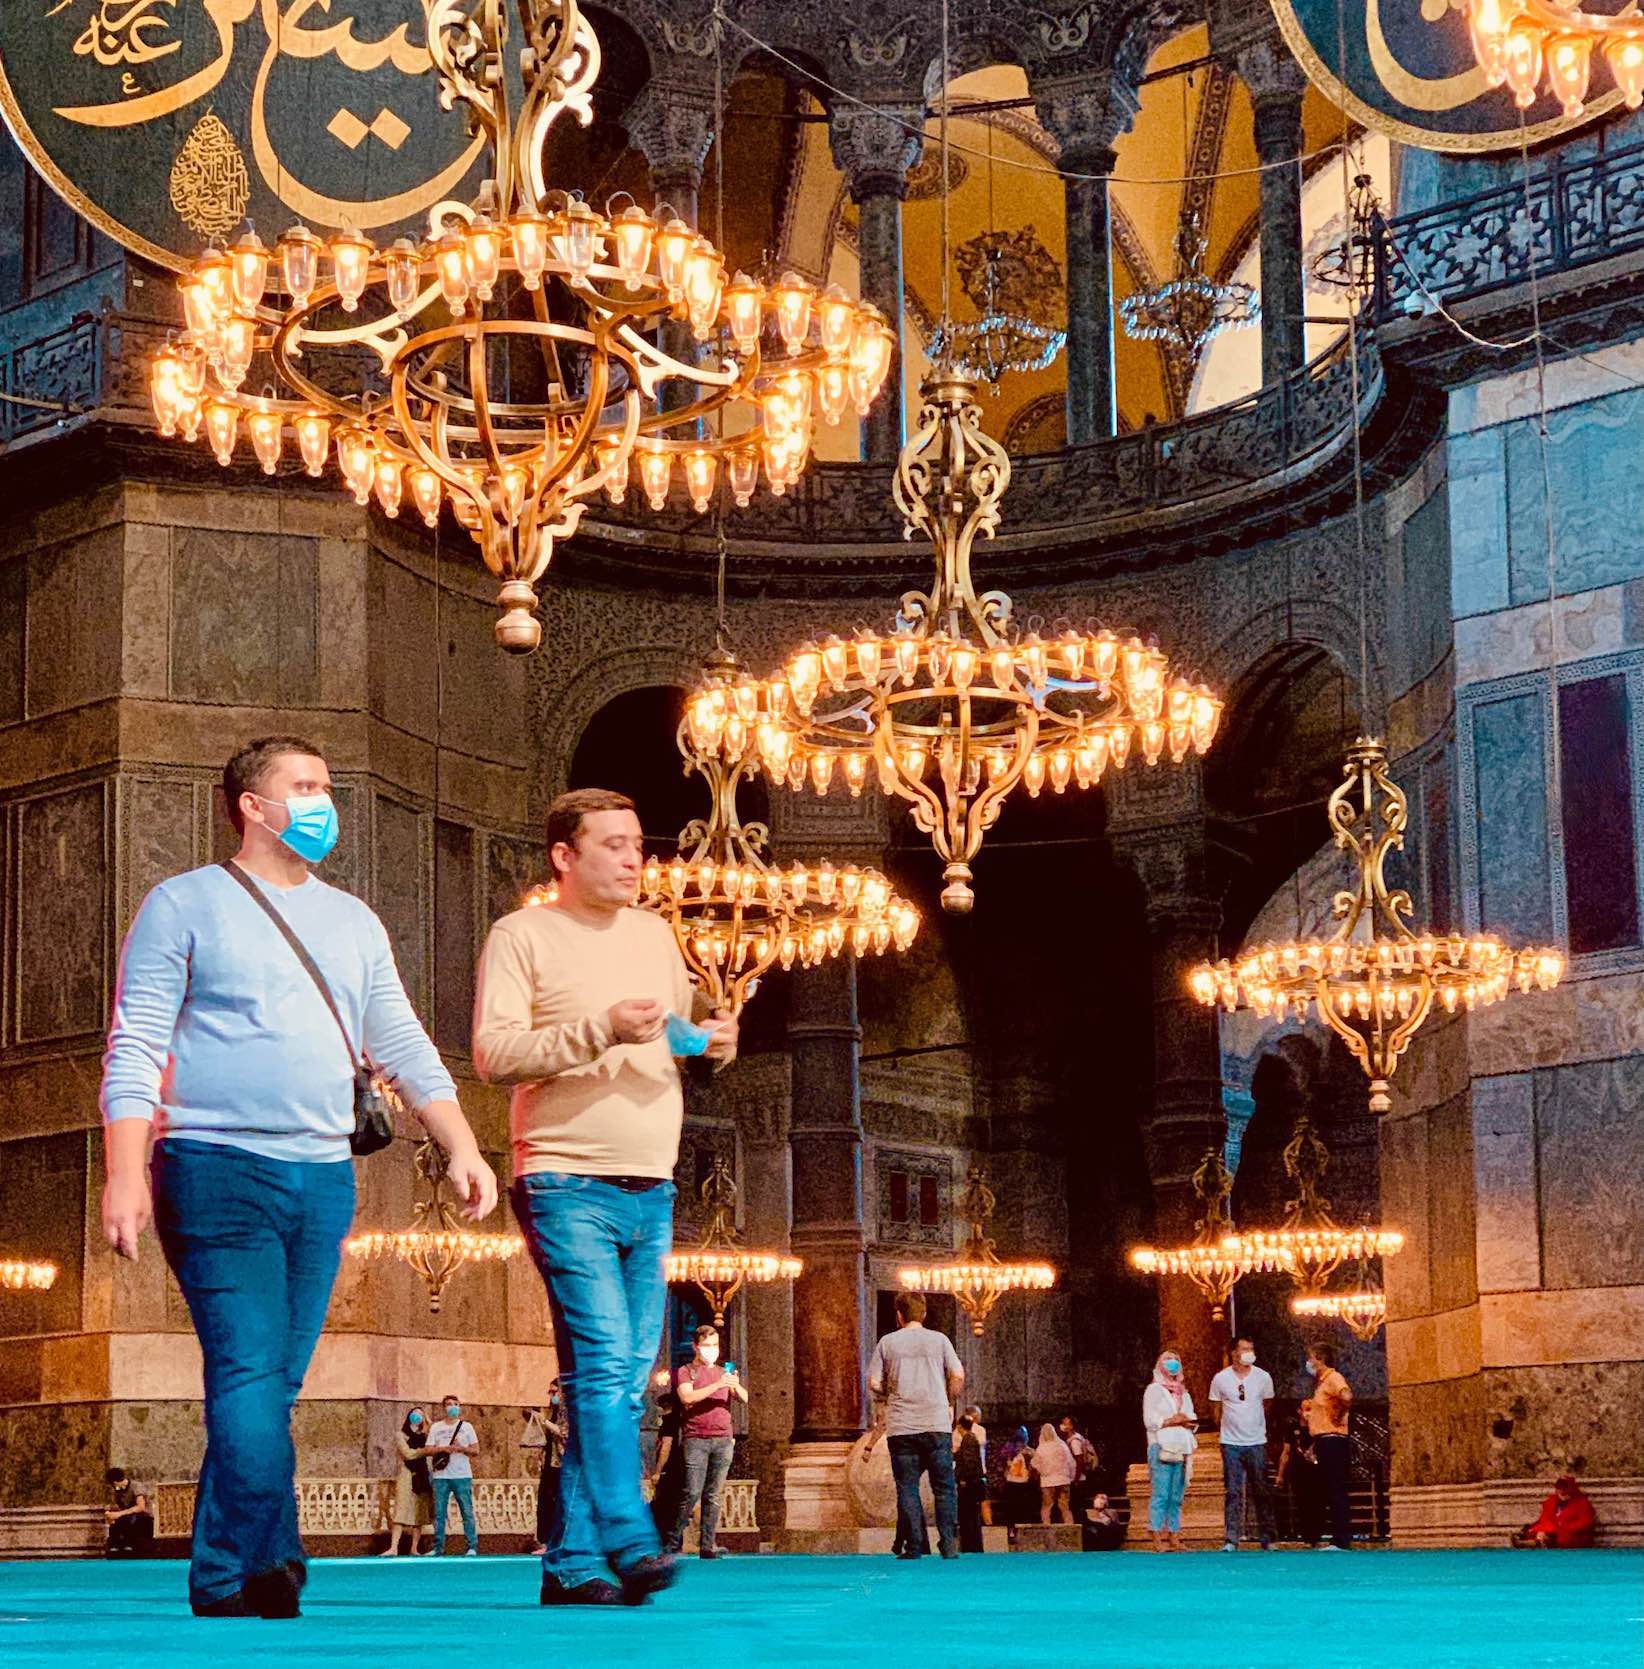 Inside the Hagia Sophia in Istanbul.